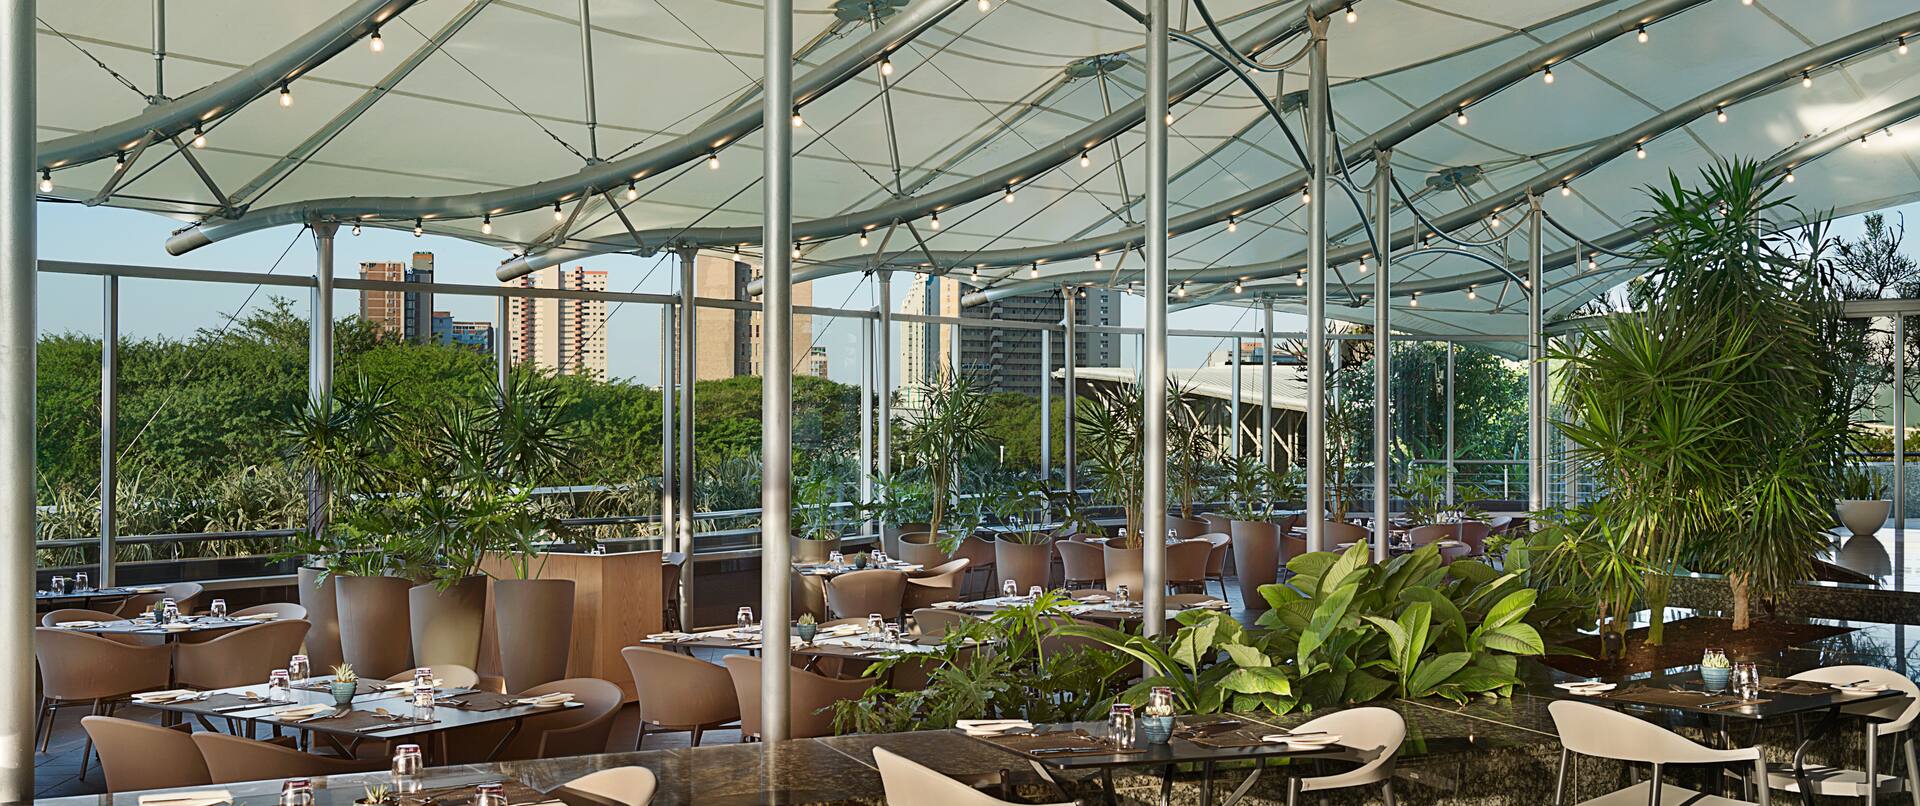 Vasco's Restaurant With Outer Terrace